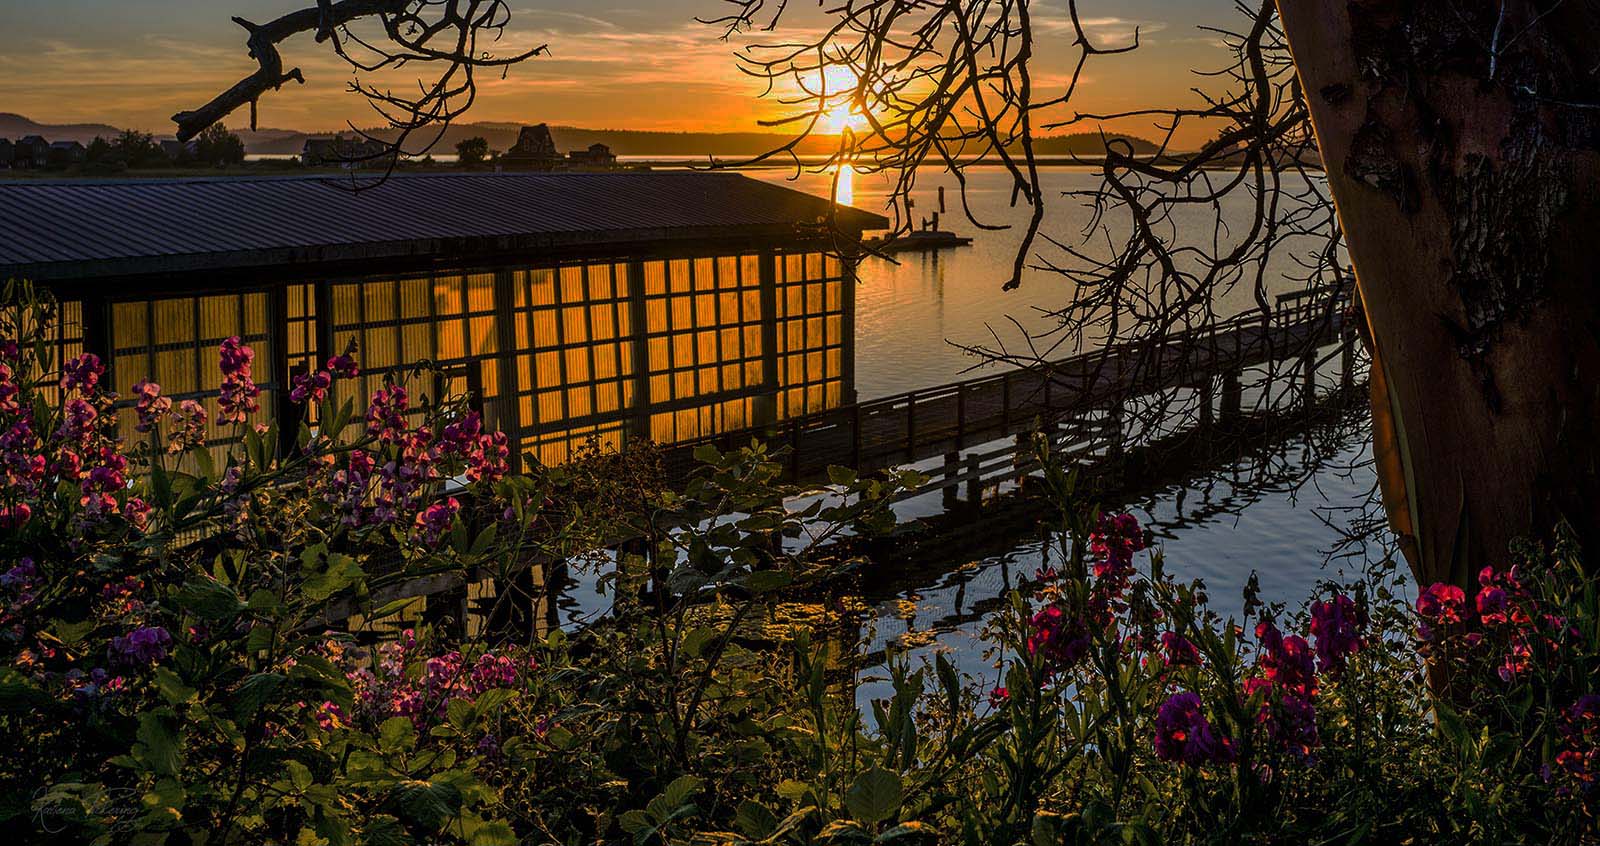 Lopez island sunset boat house moorage bay